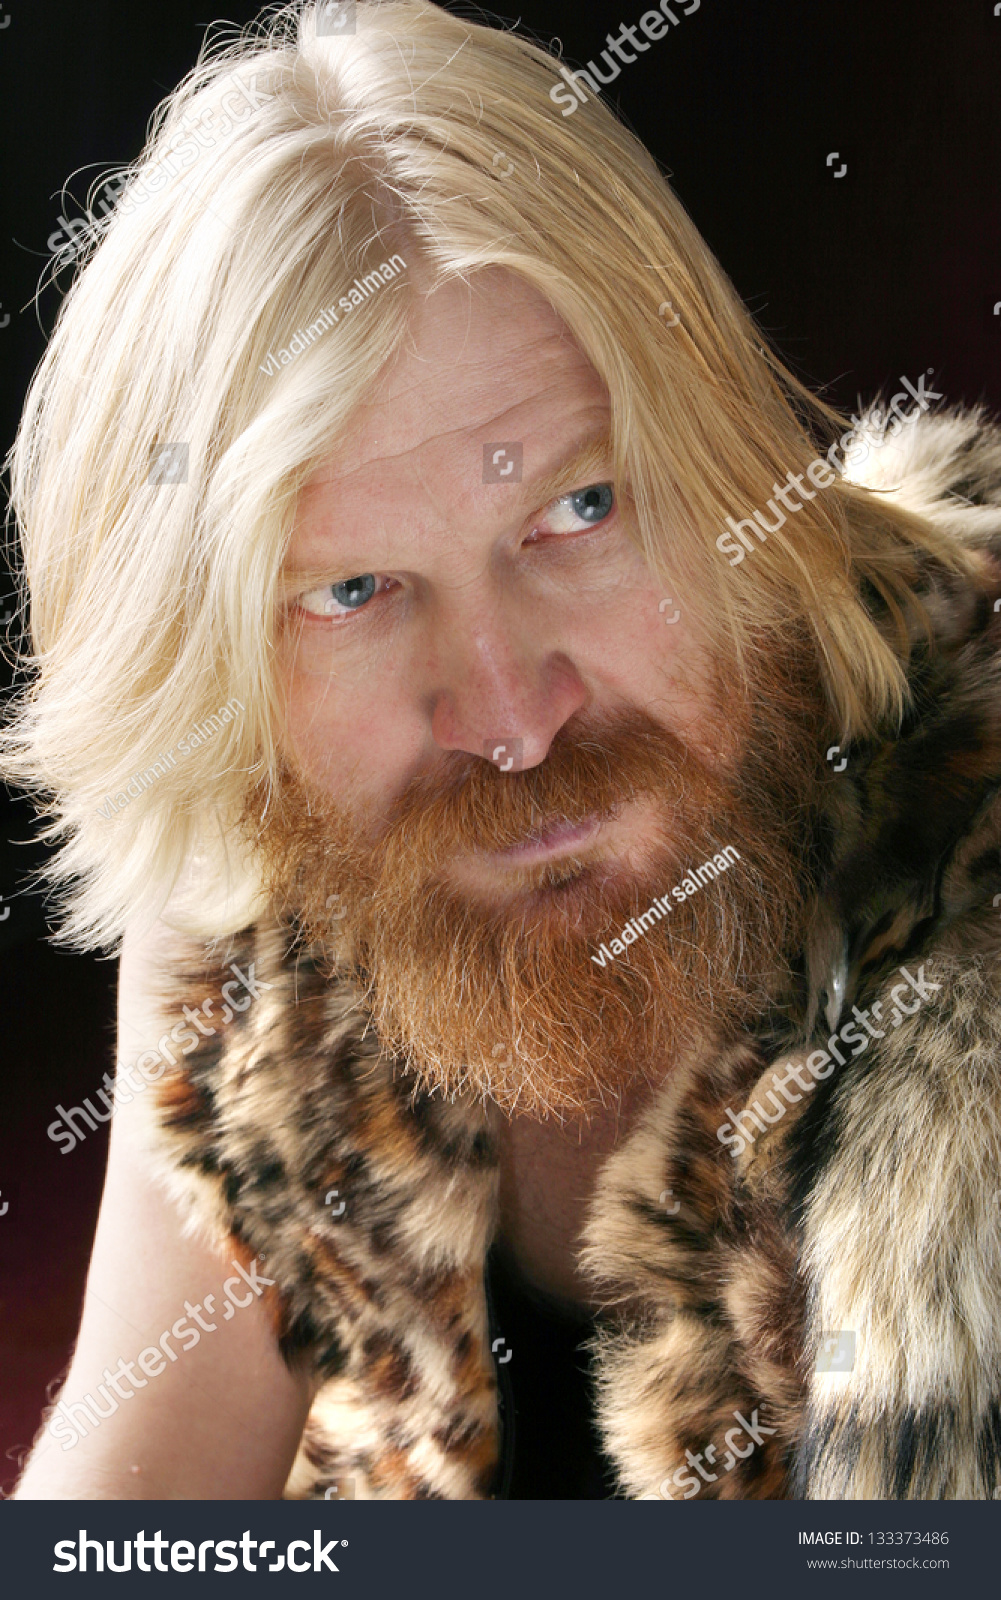 Closeup Portrait Adult Male Long Hair Stock Photo Edit Now 133373486